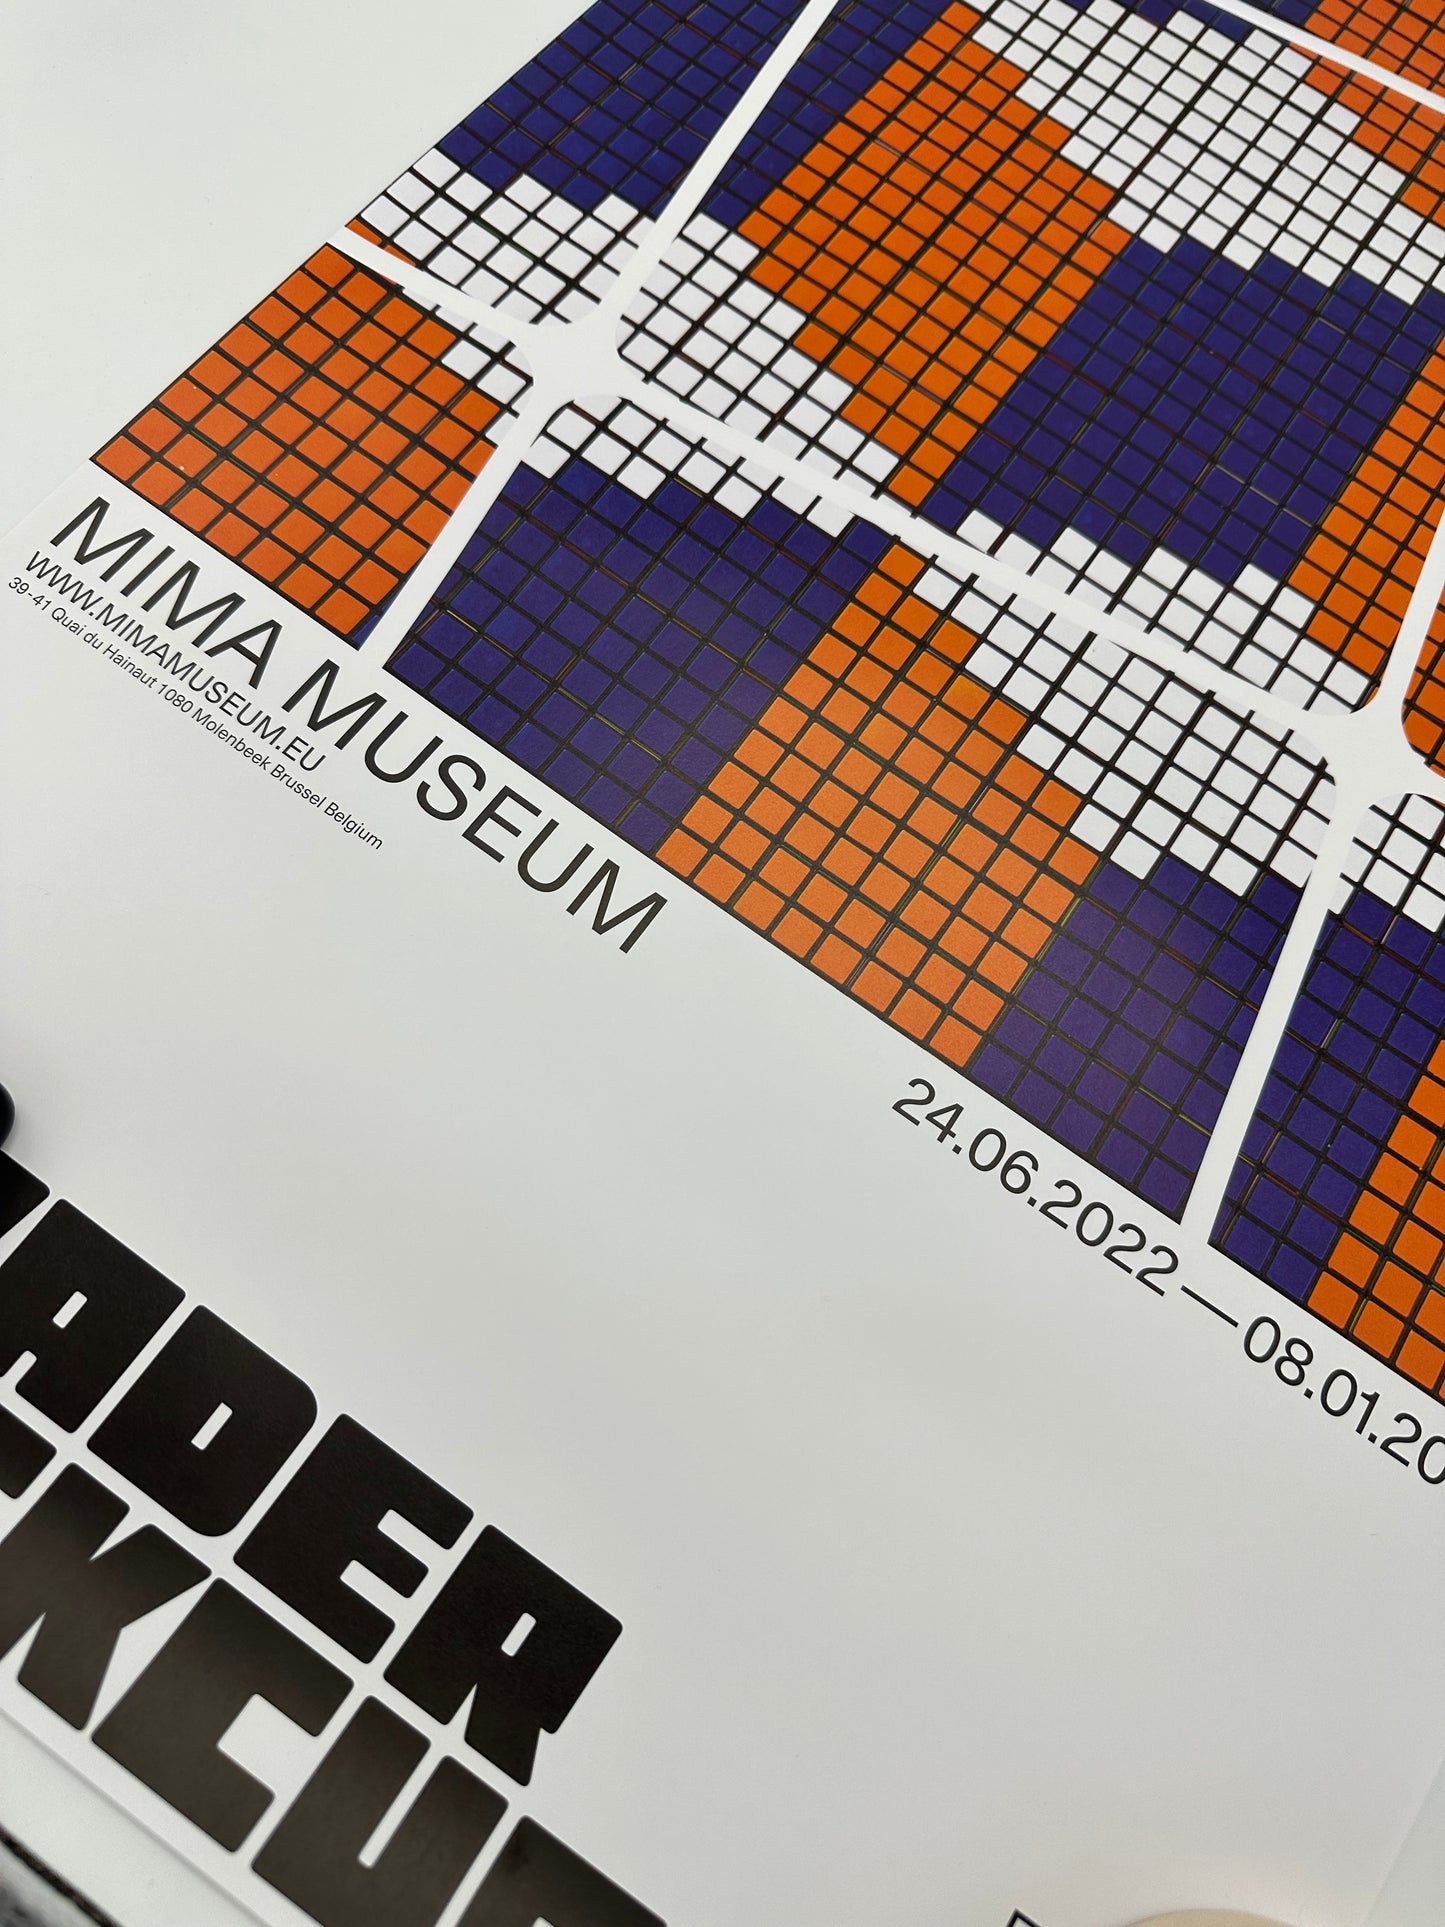 Invader - Affiche Rubikcubist 2022 / 2023